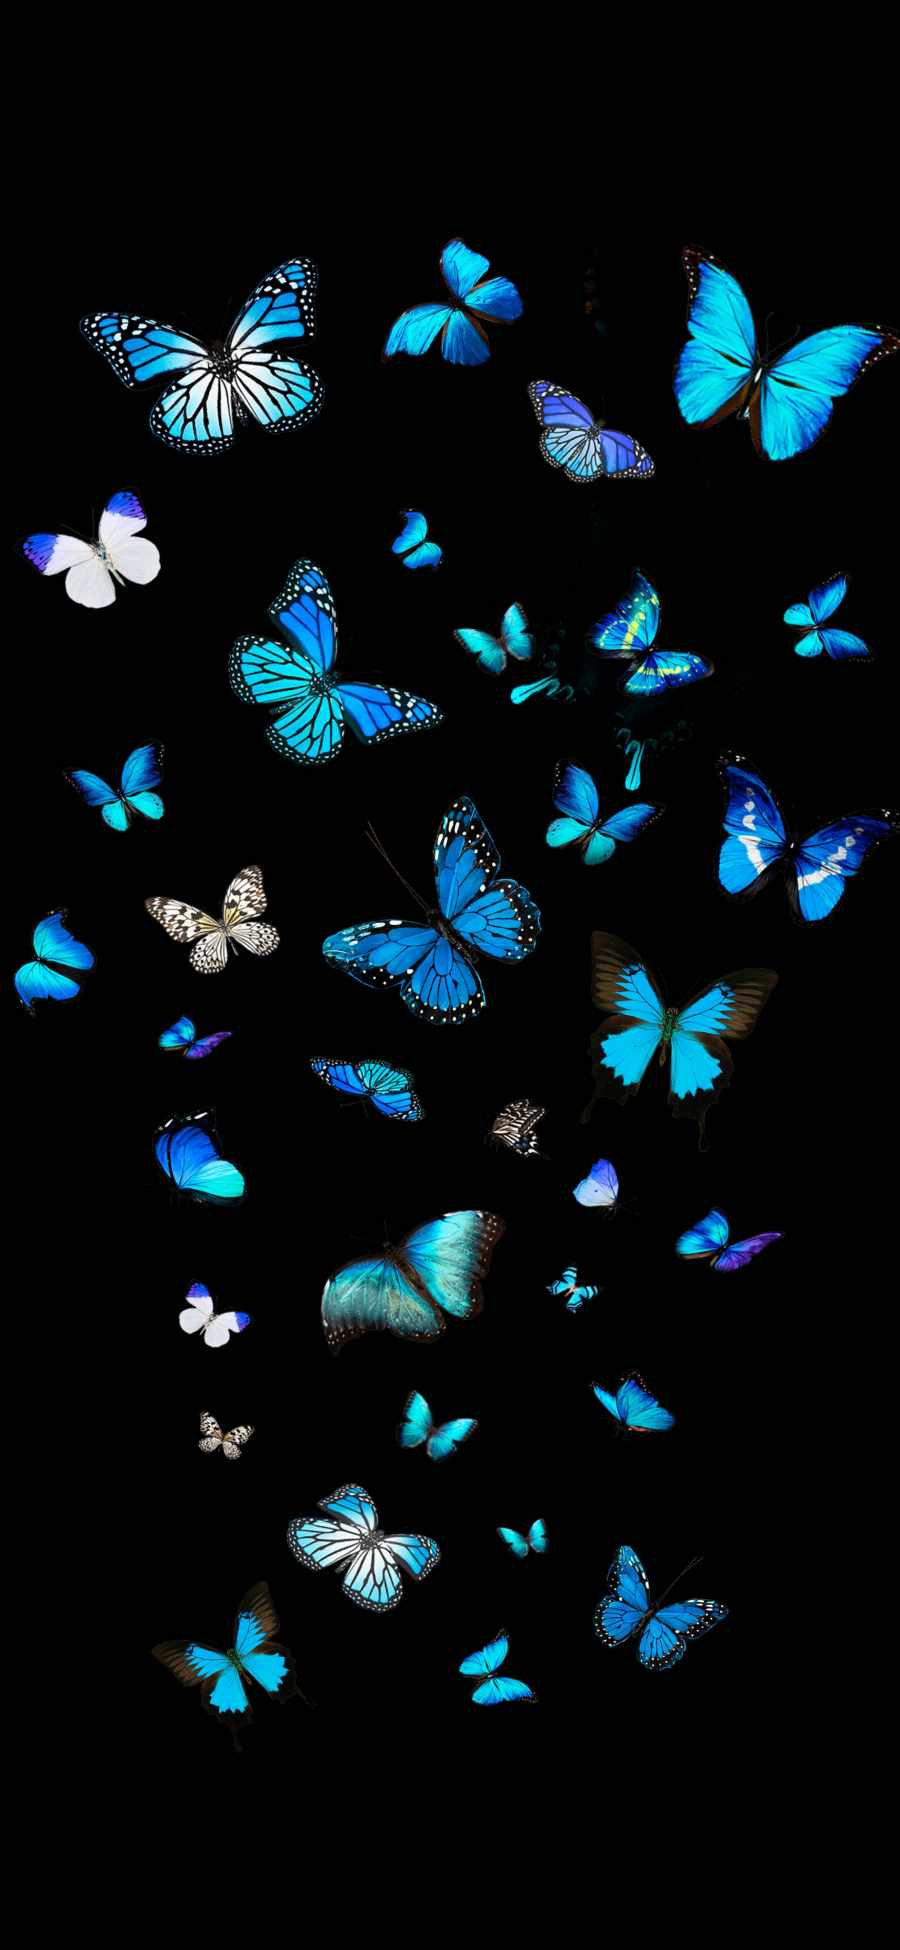 Blue Butterflies IPhone Wallpaper  IPhone Wallpapers